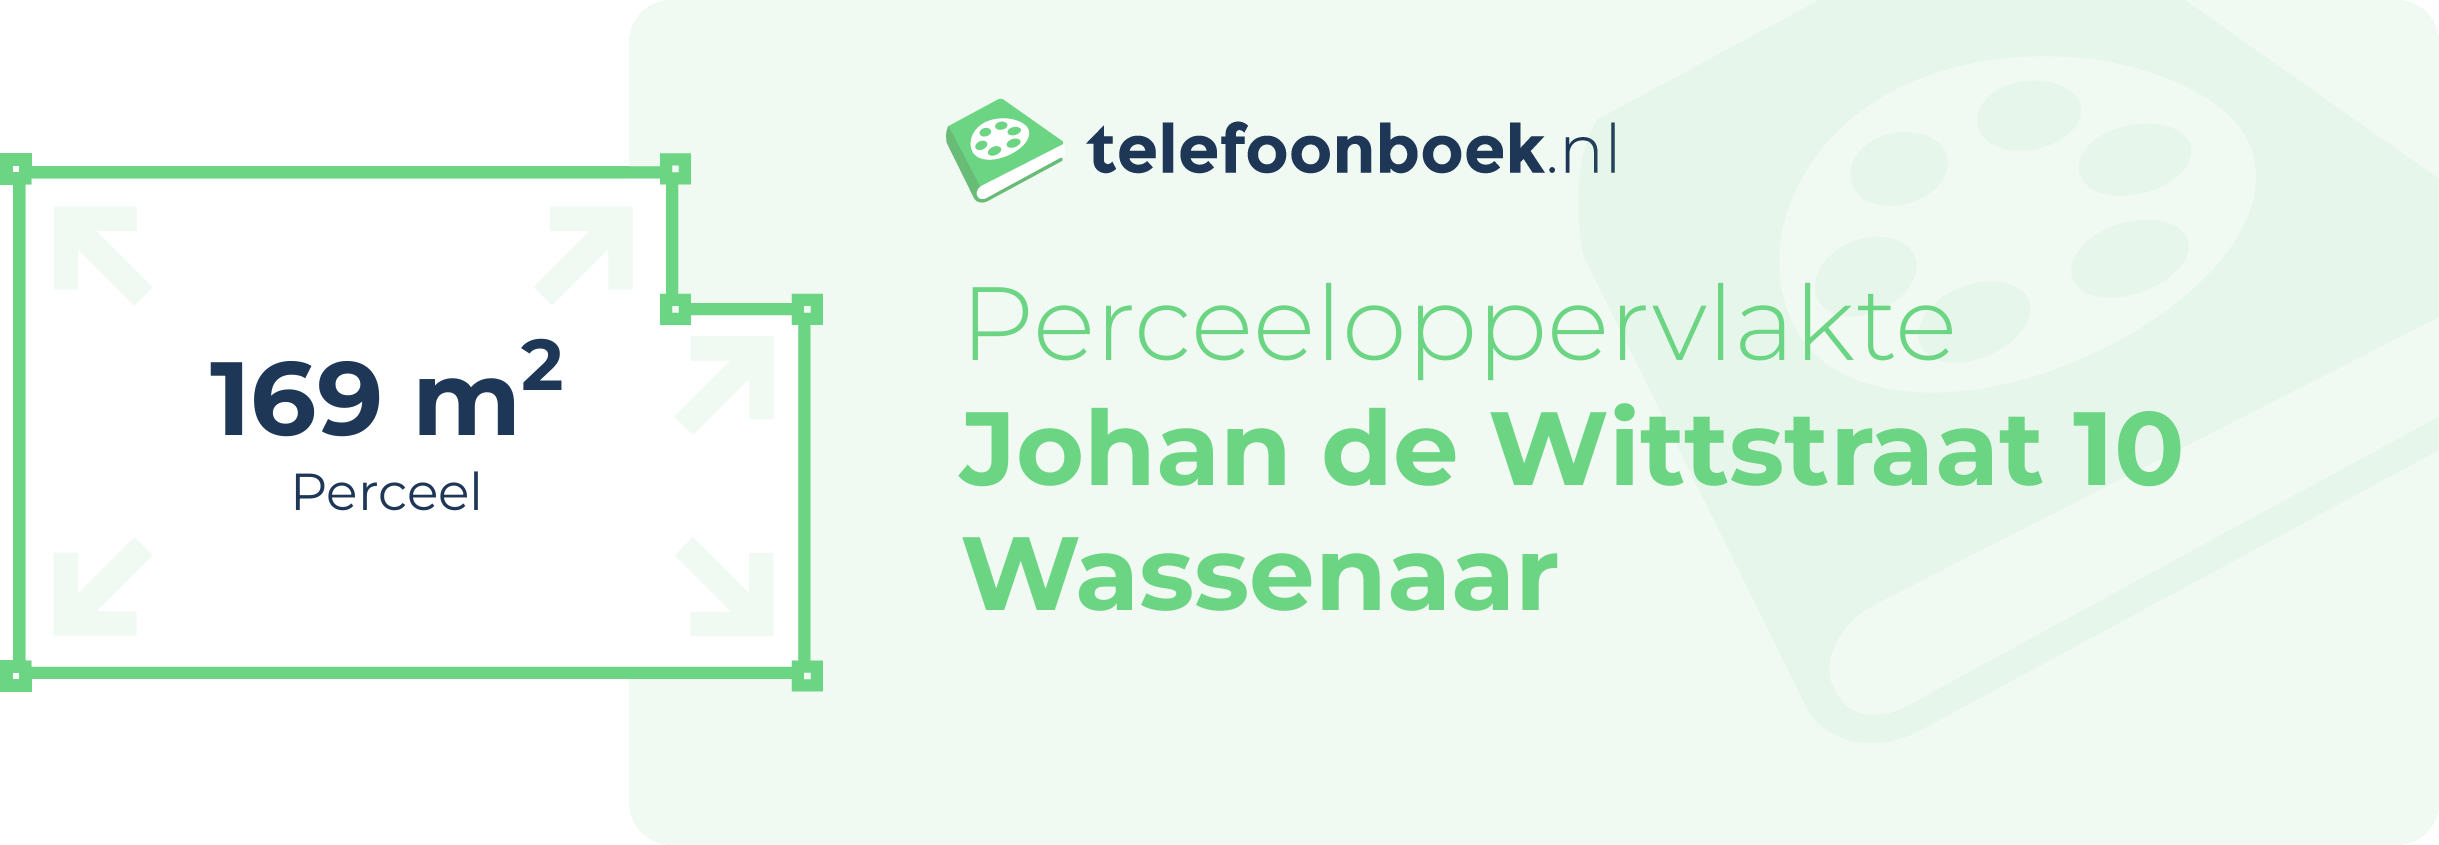 Perceeloppervlakte Johan De Wittstraat 10 Wassenaar